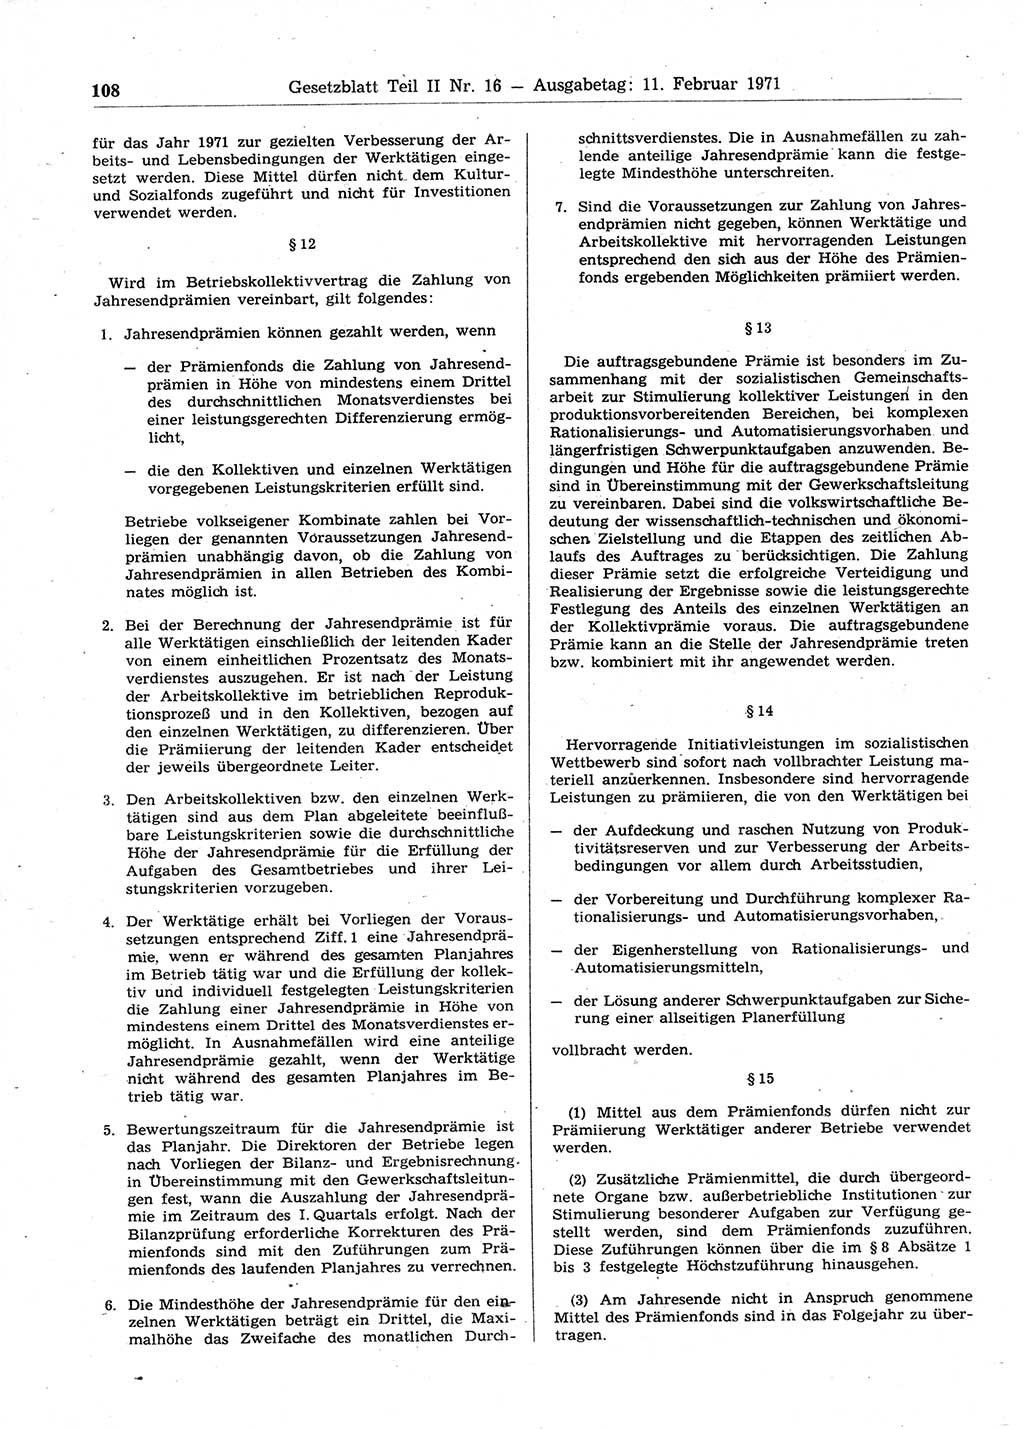 Gesetzblatt (GBl.) der Deutschen Demokratischen Republik (DDR) Teil ⅠⅠ 1971, Seite 108 (GBl. DDR ⅠⅠ 1971, S. 108)